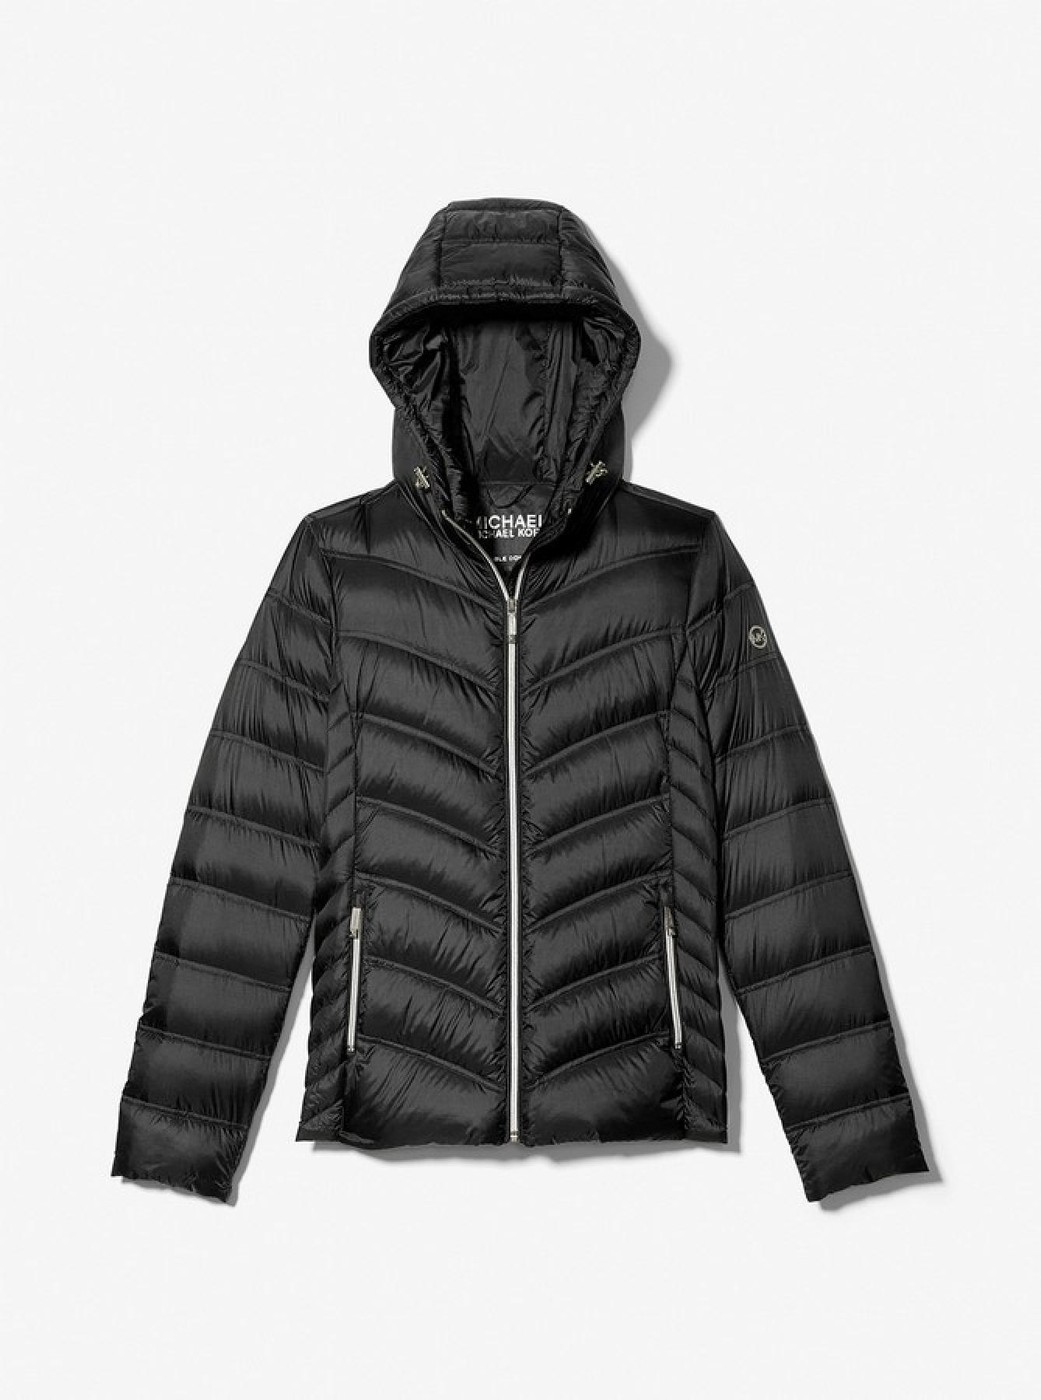 Куртка демисезонная - женская куртка Michael Kors, XS, XS